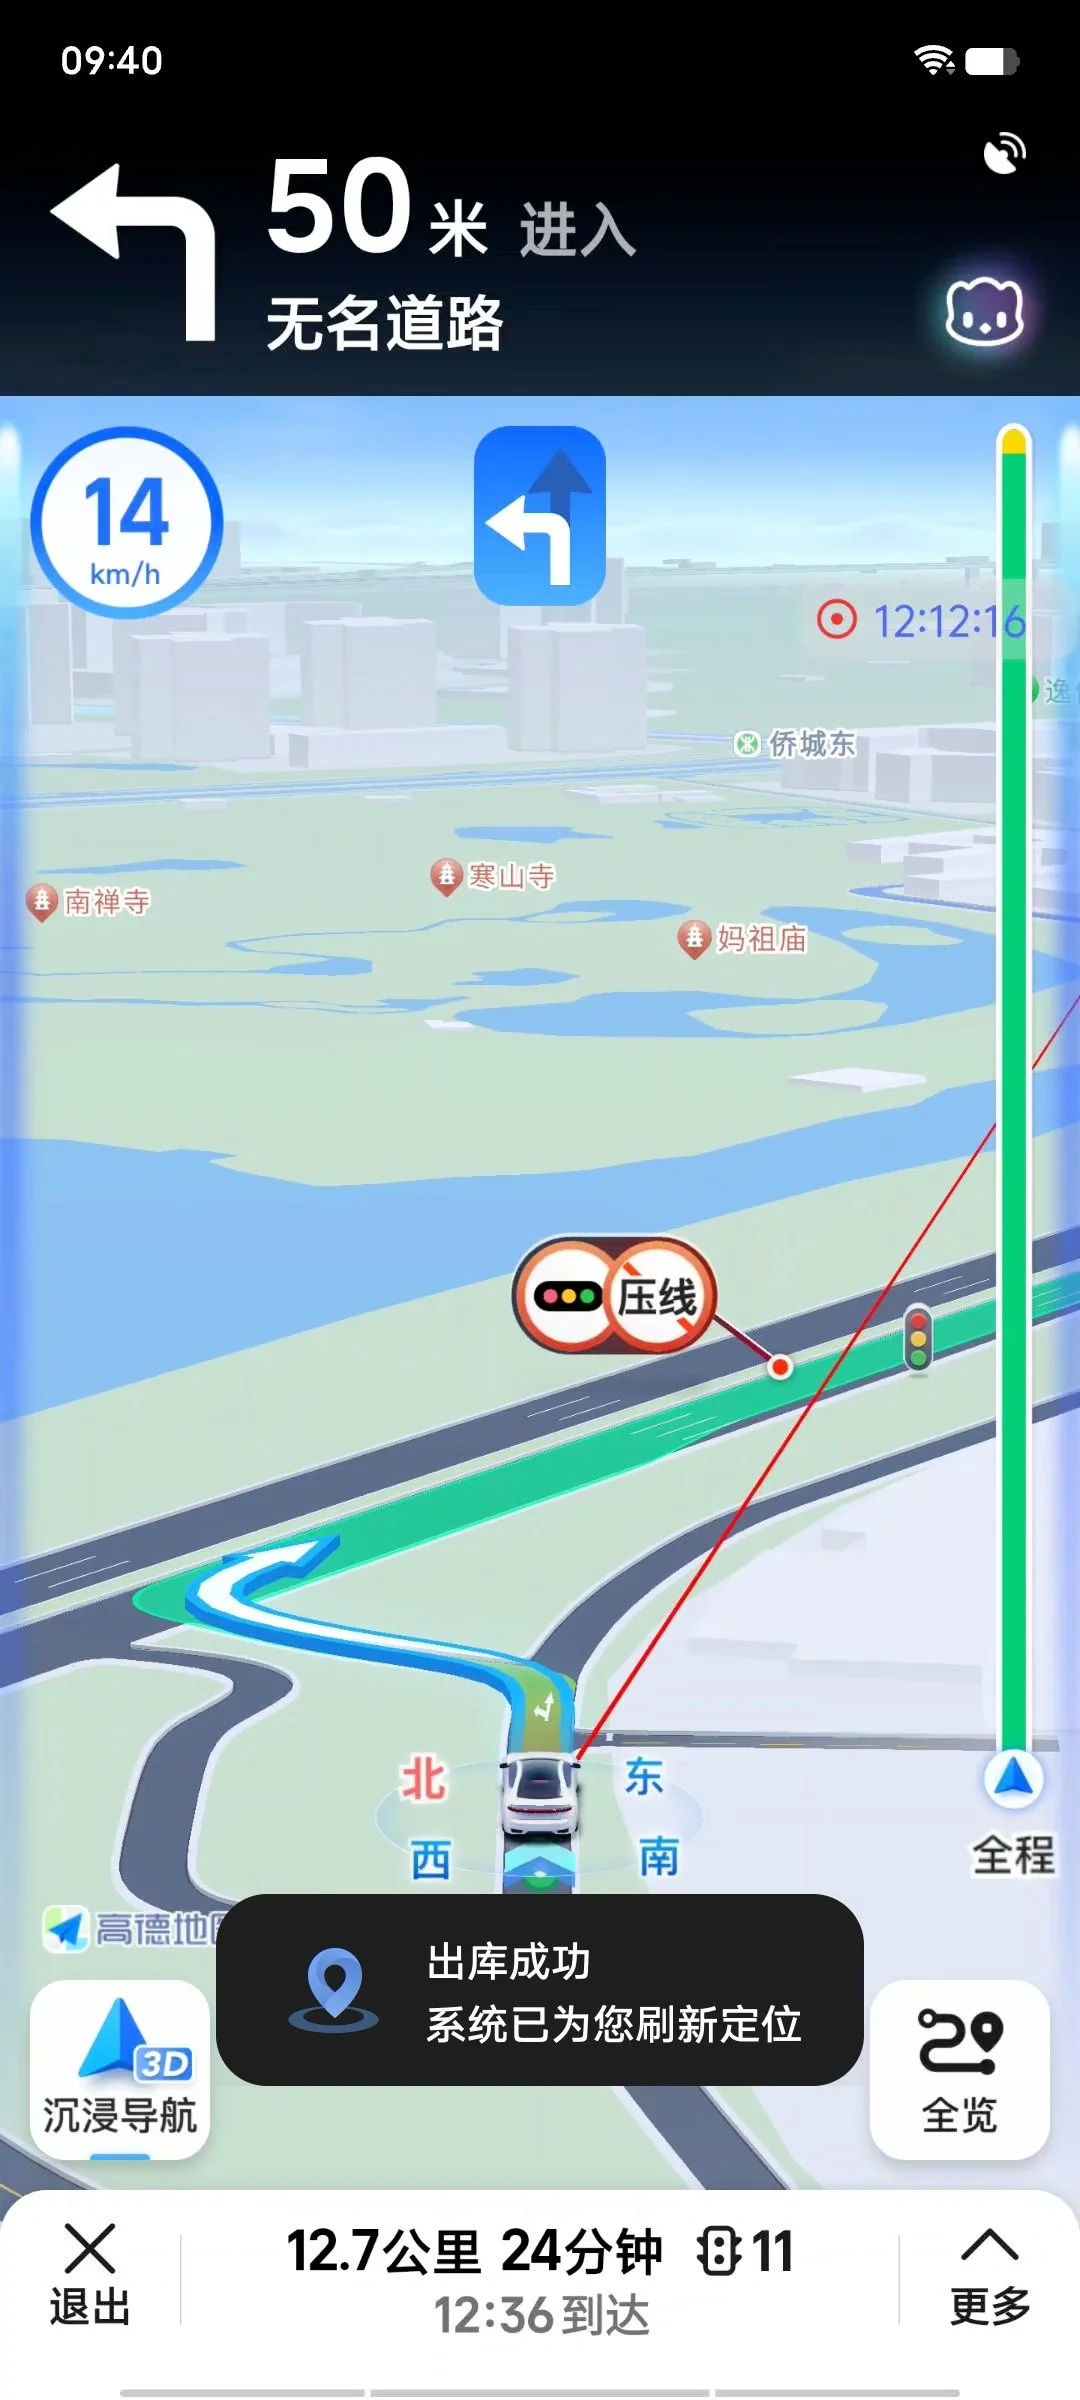 高德地图推出地下停车场离库导航服务帮助用户实现出库快速定位